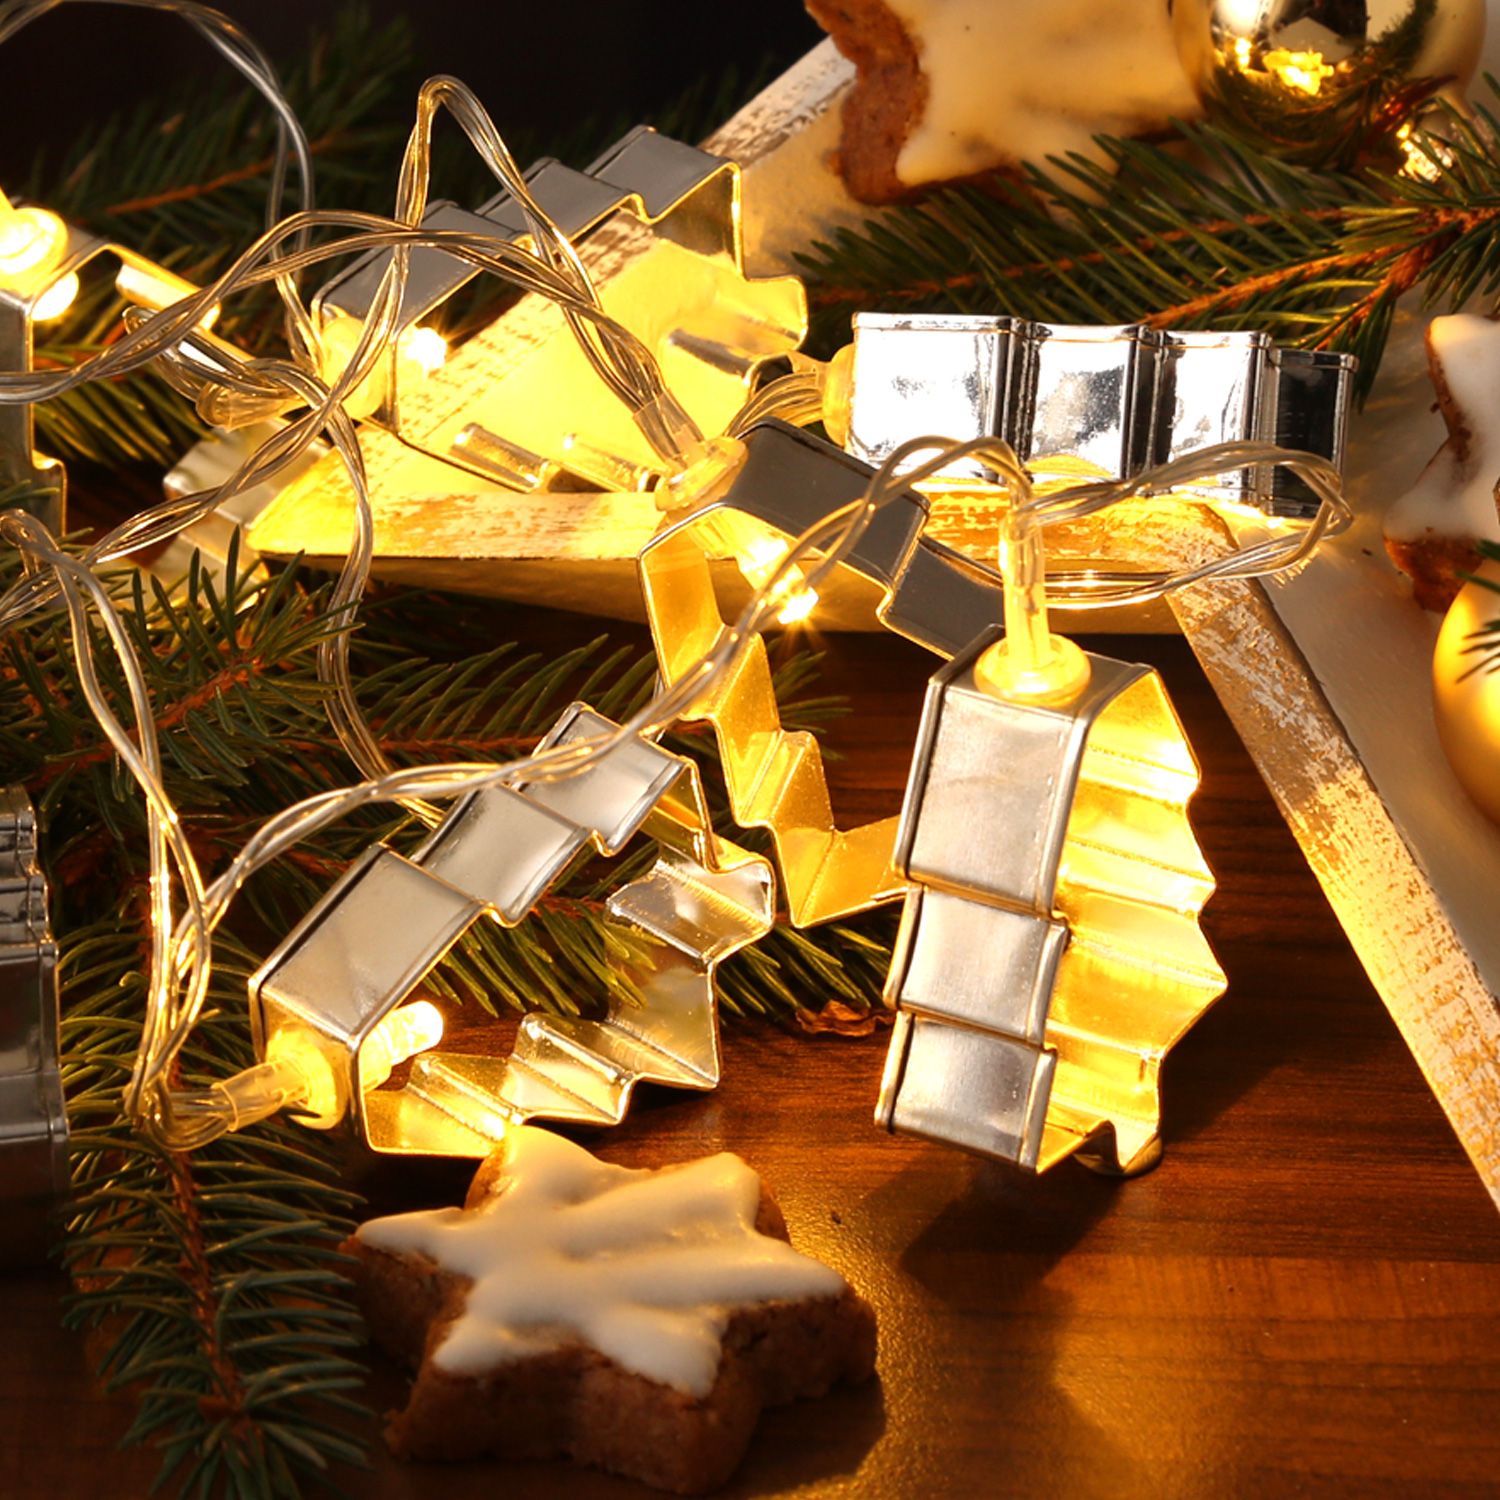 LED Lichterkette mit silbernen Baum Backförmchen - 8 warmweiße LED - Batteriebetrieb - L: 1,4m